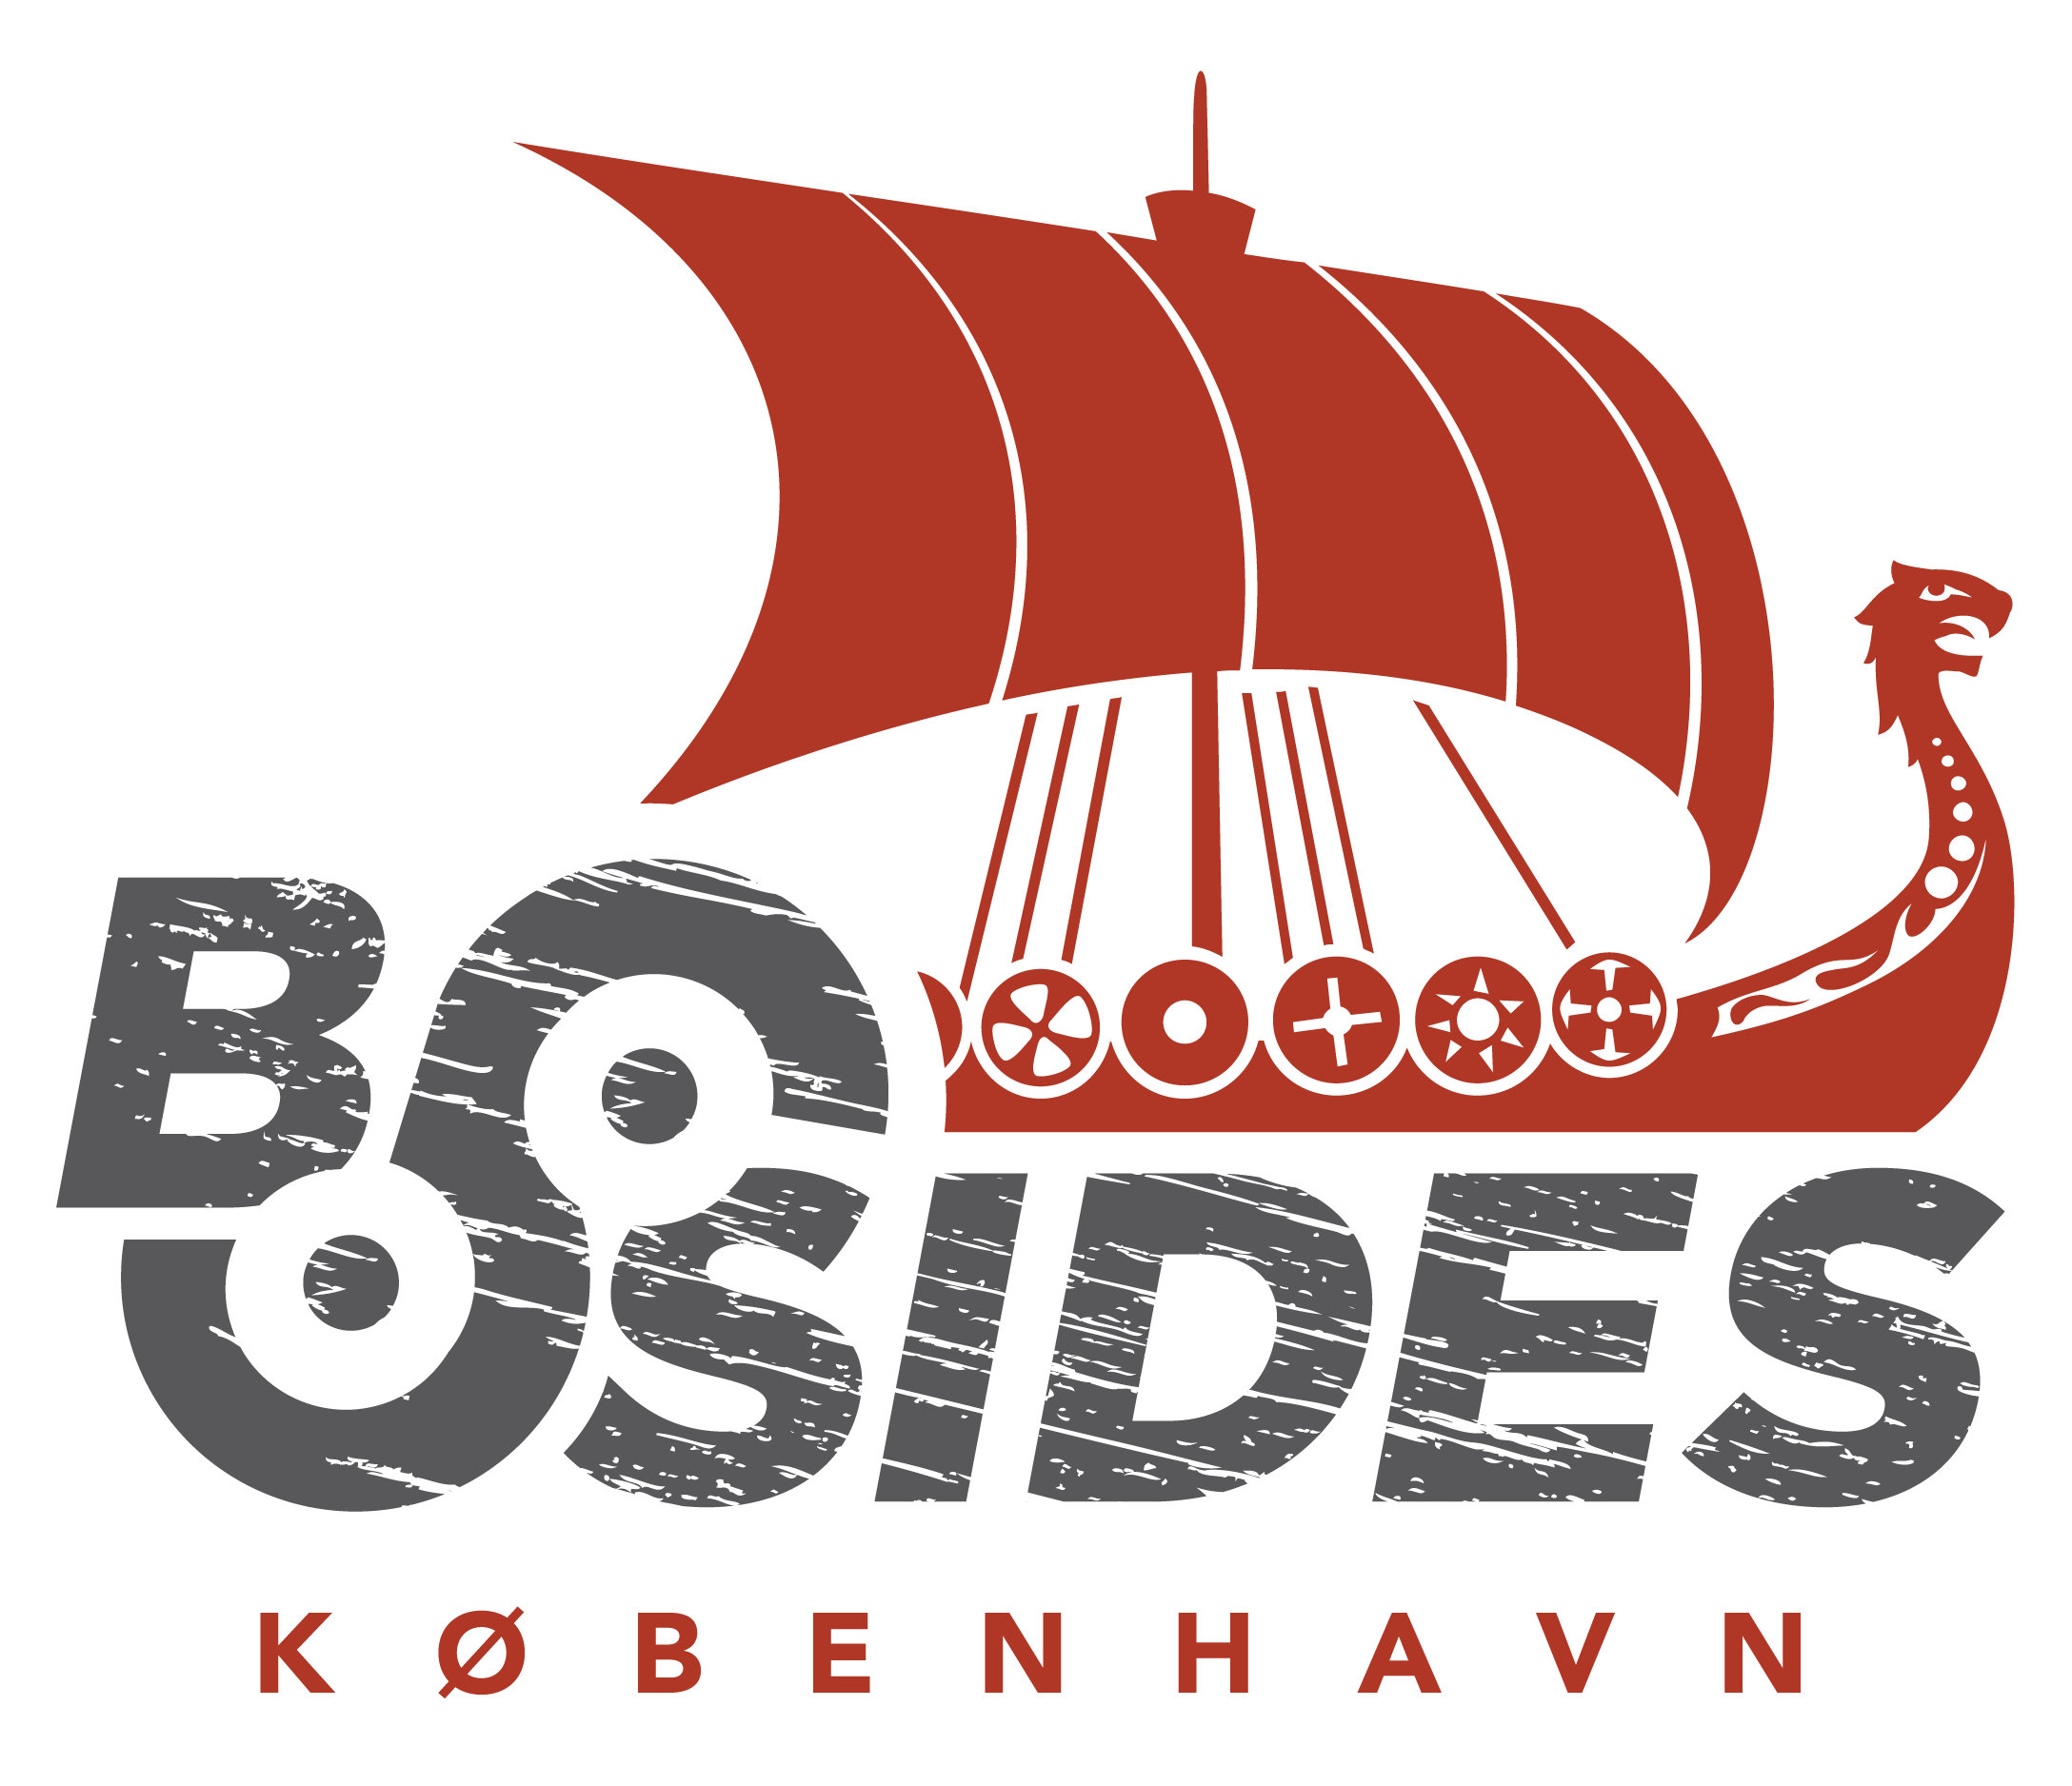 BSides København